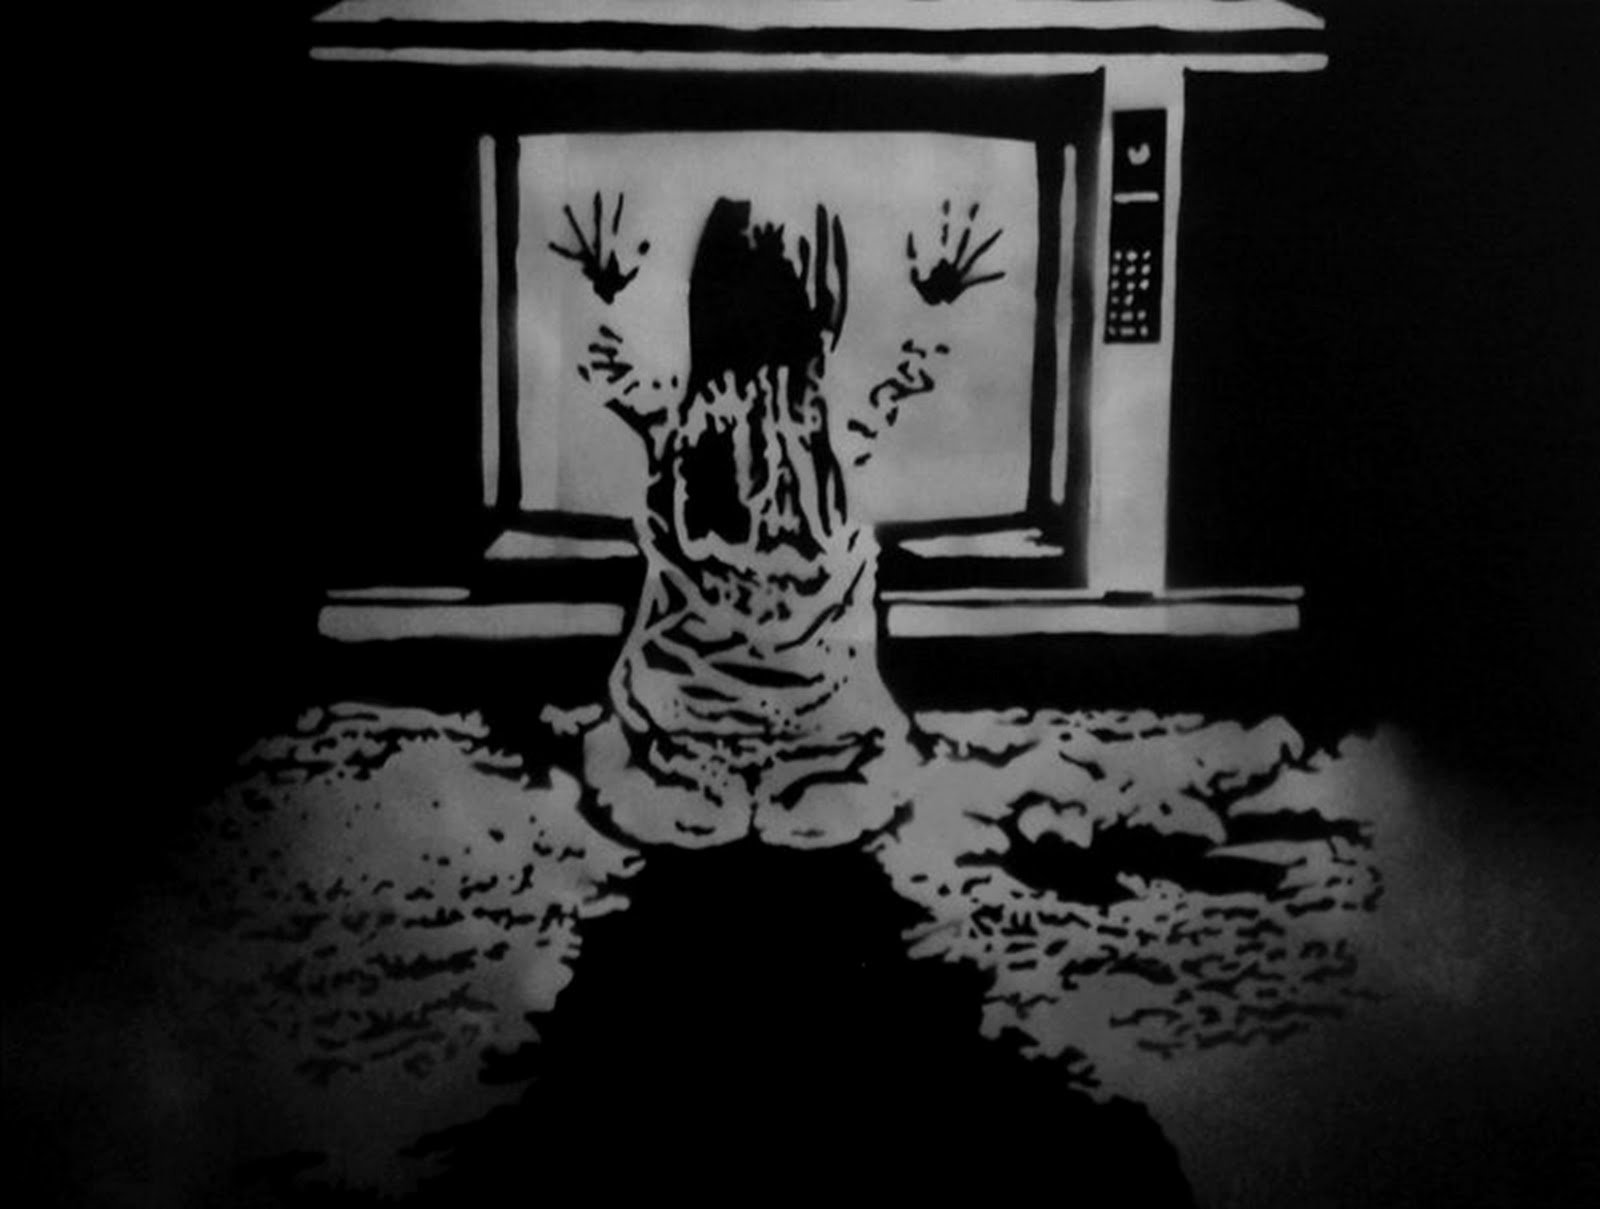 POLTERGEIST horror dark thriller movie film 32 wallpaper